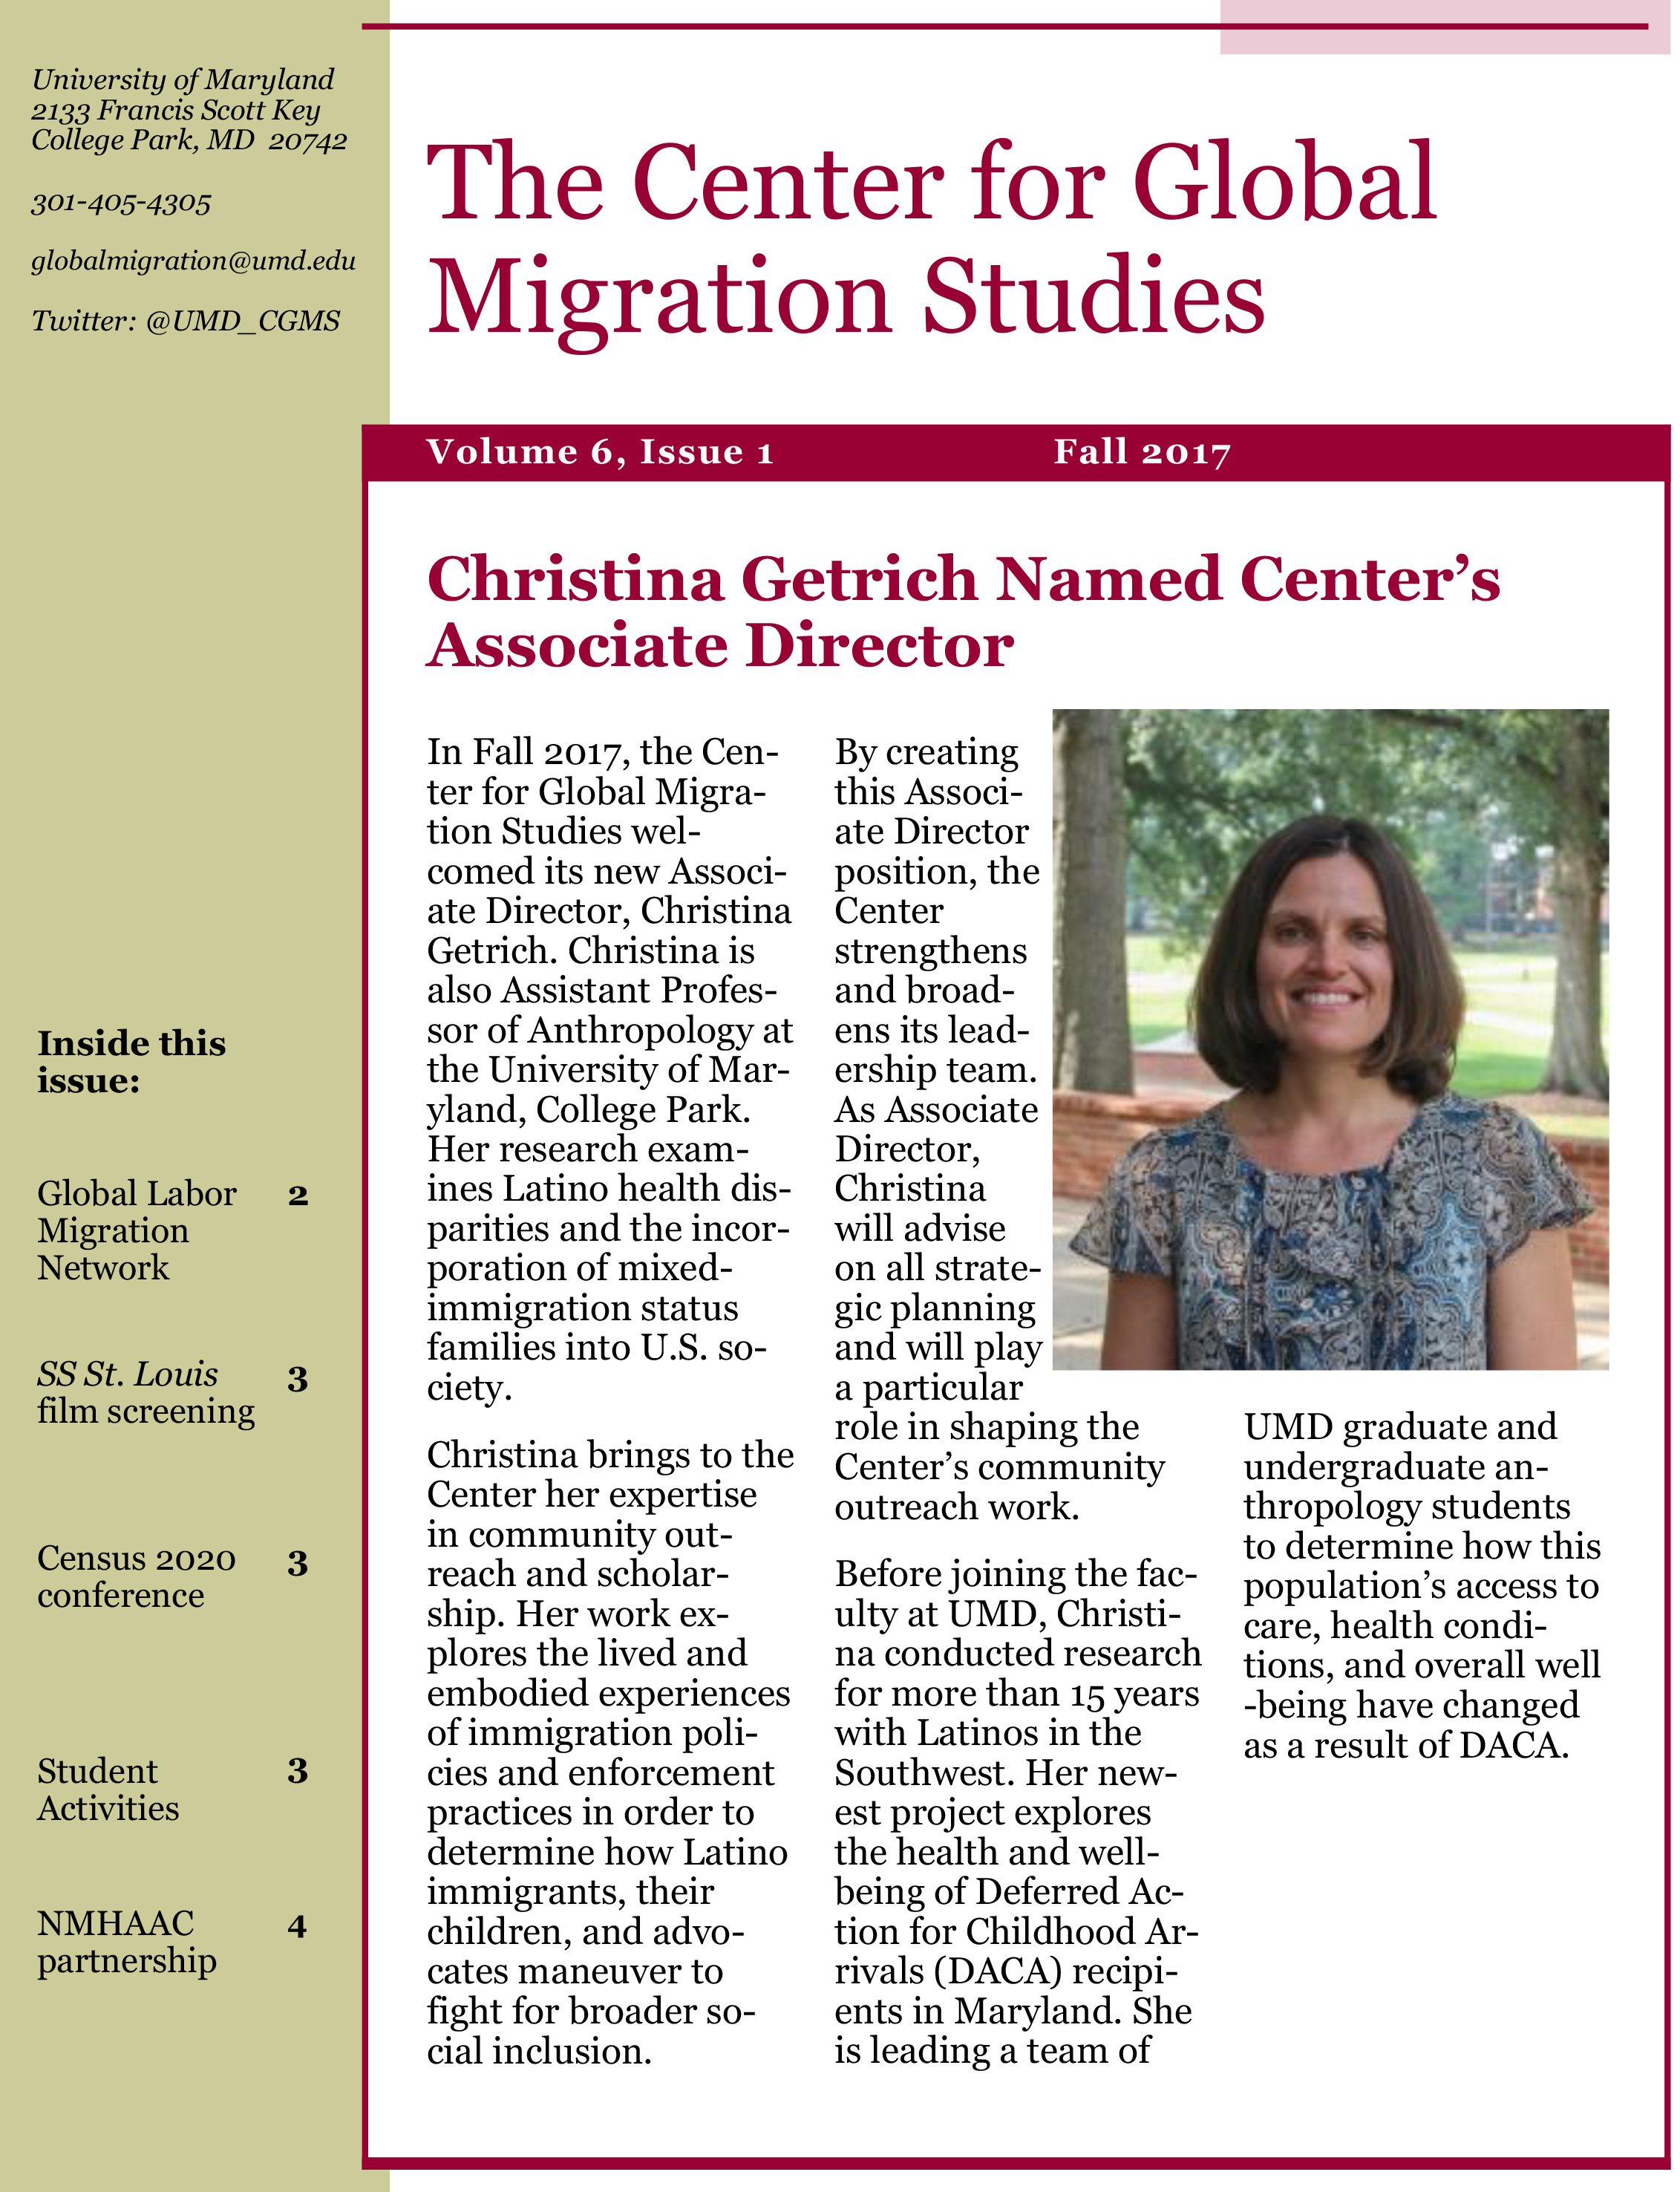 Center for Global Migration Studies Newsletter Fall 2017